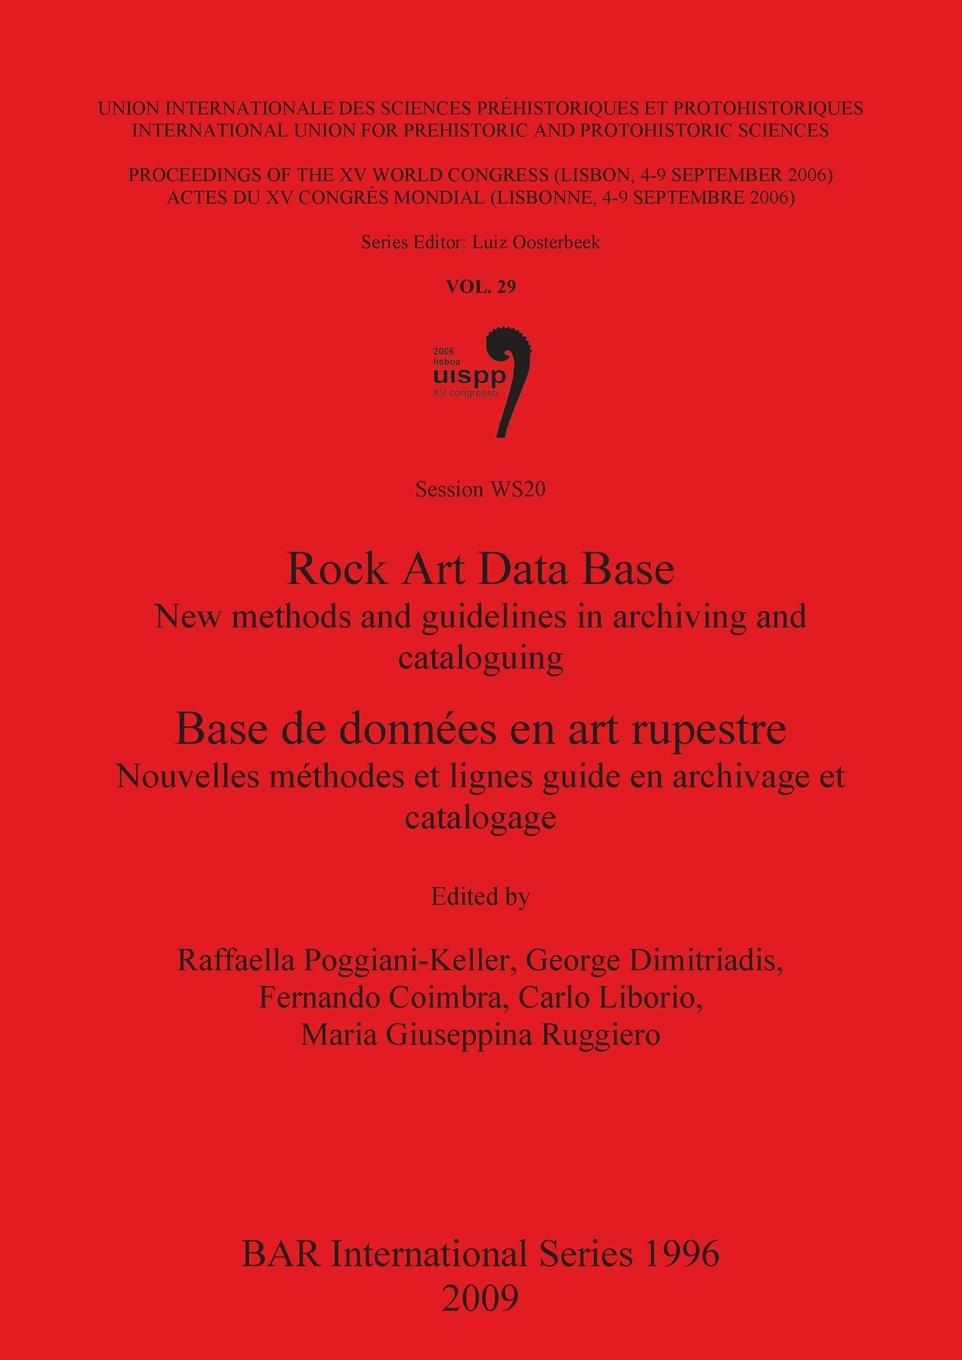 Rock Art Data Base / Base de données en art rupestre: New methods and guidelines in archiving and cataloguing / Nouvelles méthodes et lignes guide en - Poggiani-Keller, Raffaella